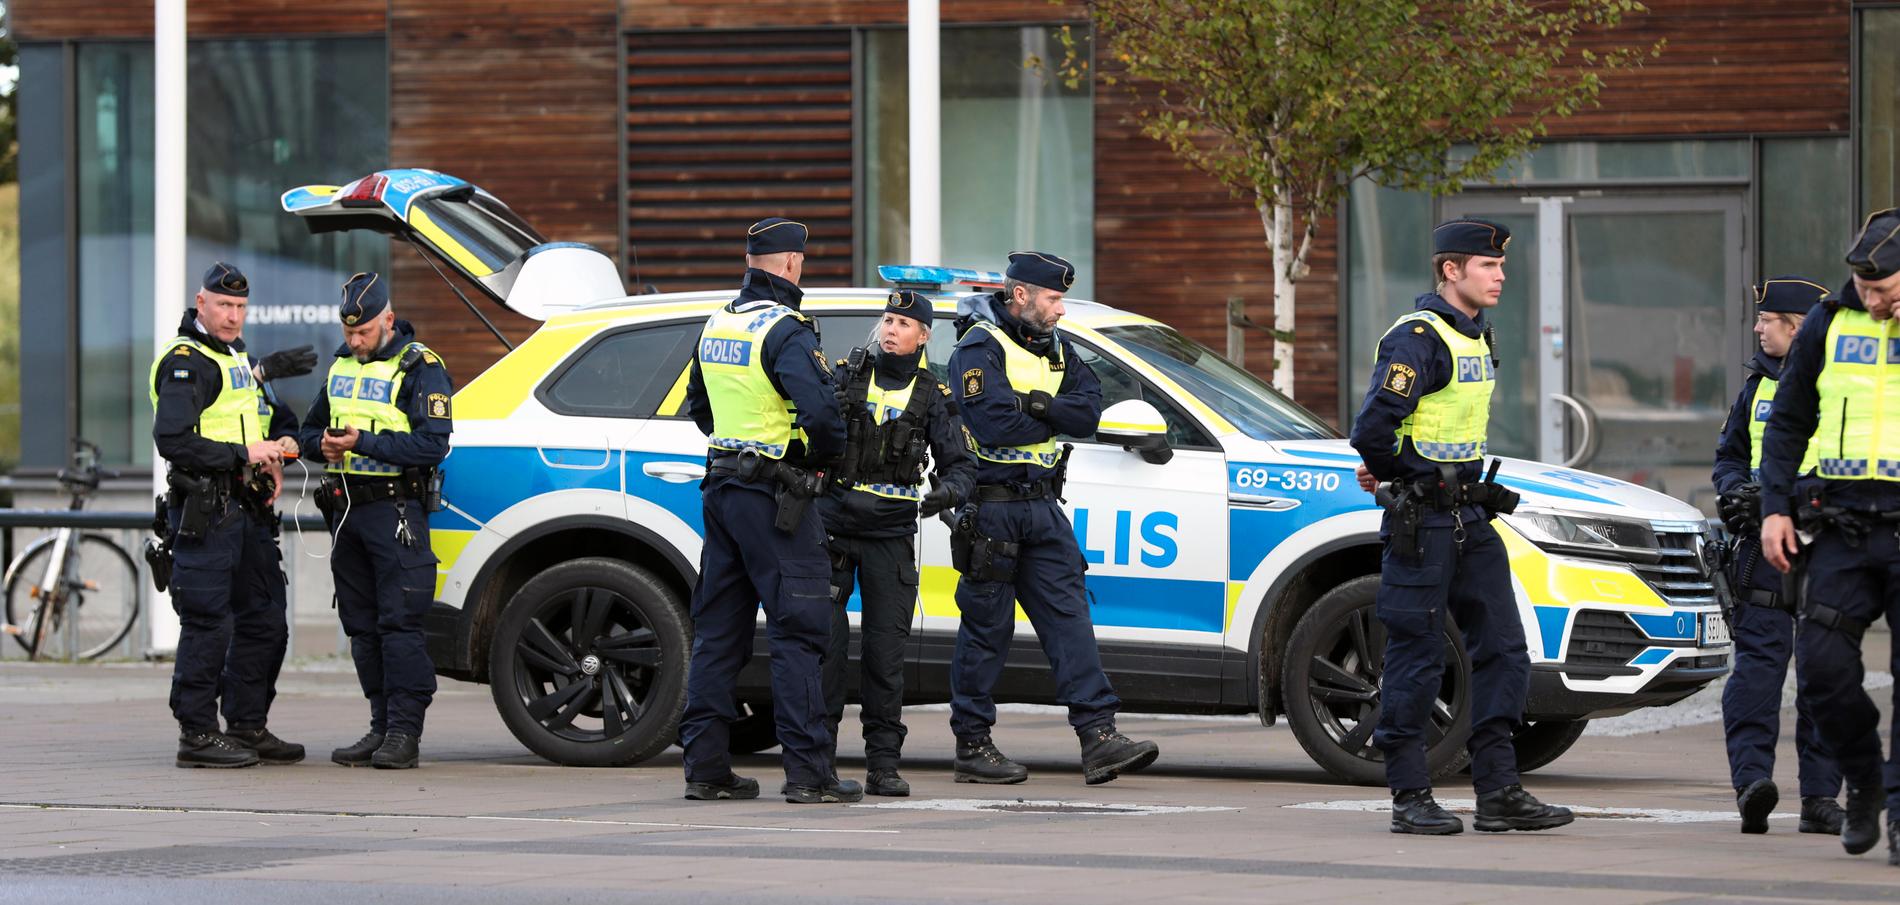 Polisen i Malmö har med projektet ”sluta skjut” fått ned antalet skjutningar med mer än 60 procent sedan 2017.